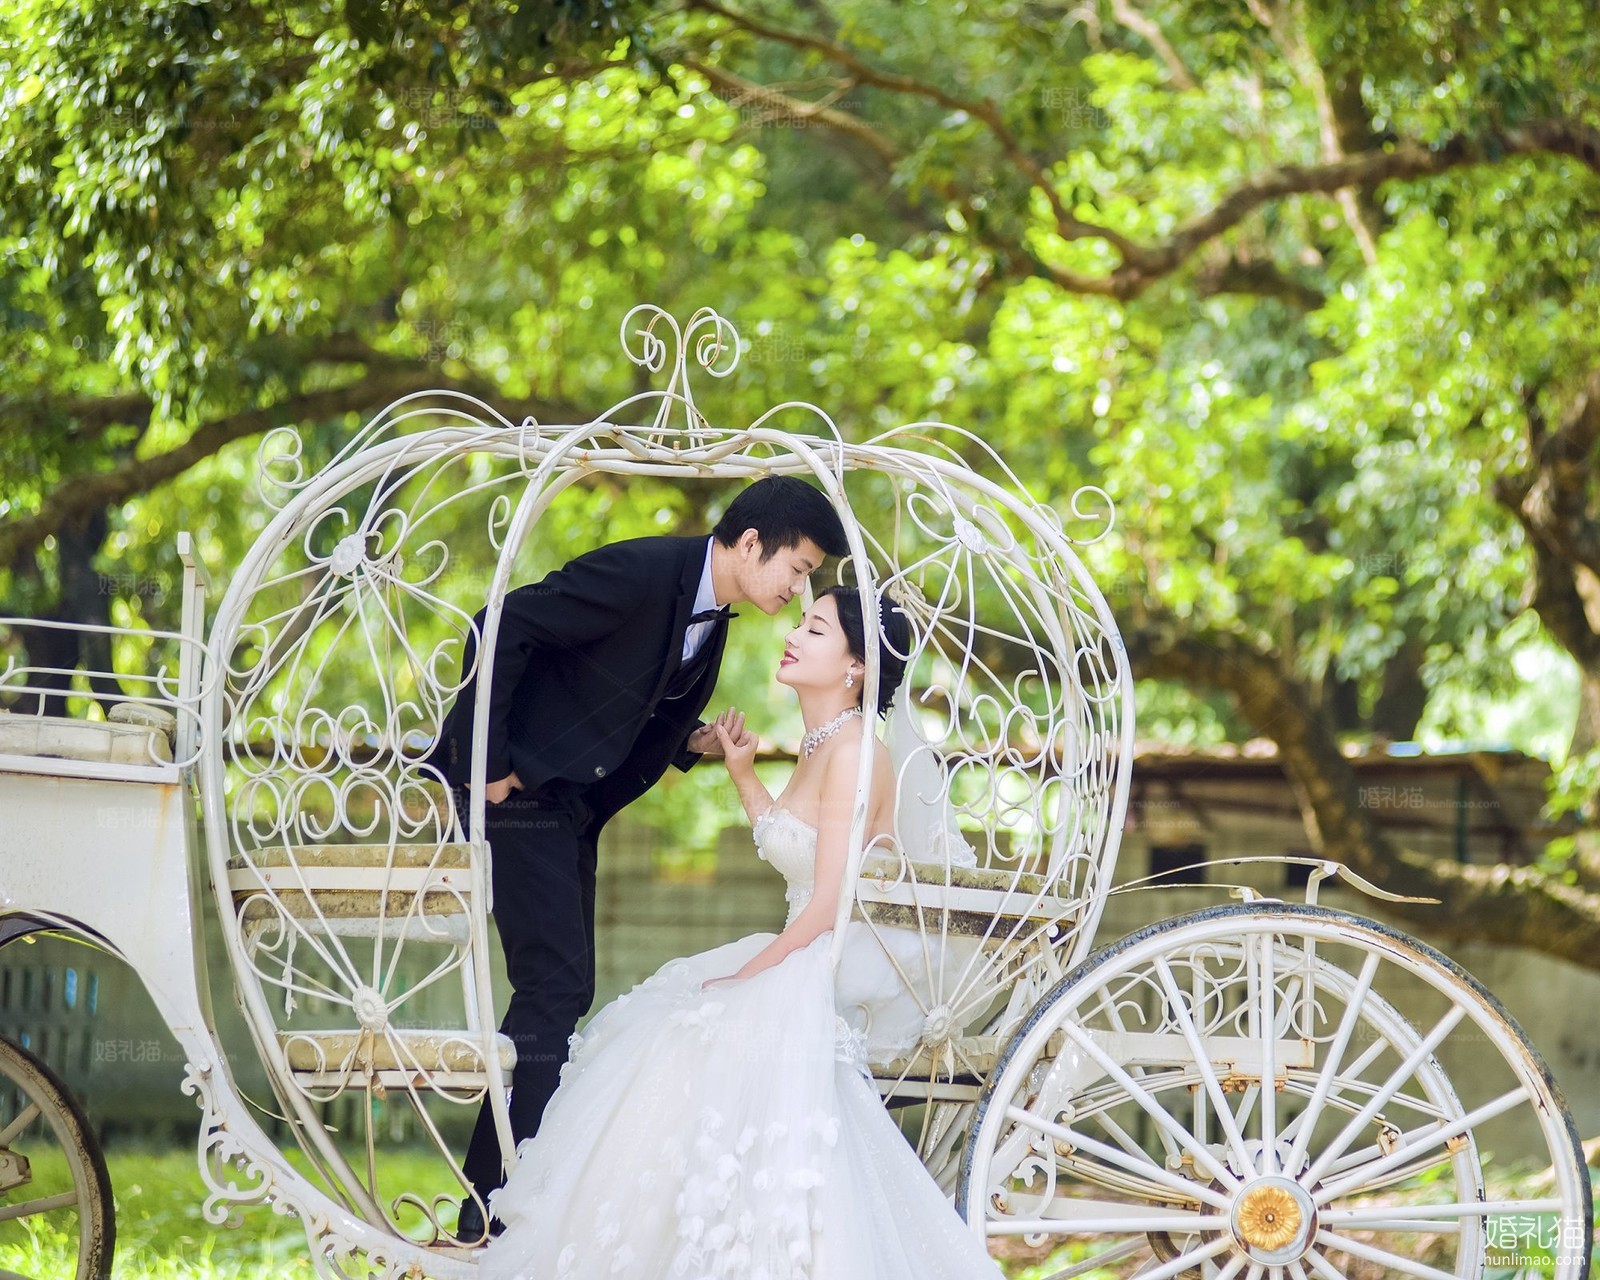 欧式结婚照|园林婚纱摄影,[欧式, 园林],深圳婚纱照,婚纱照图片